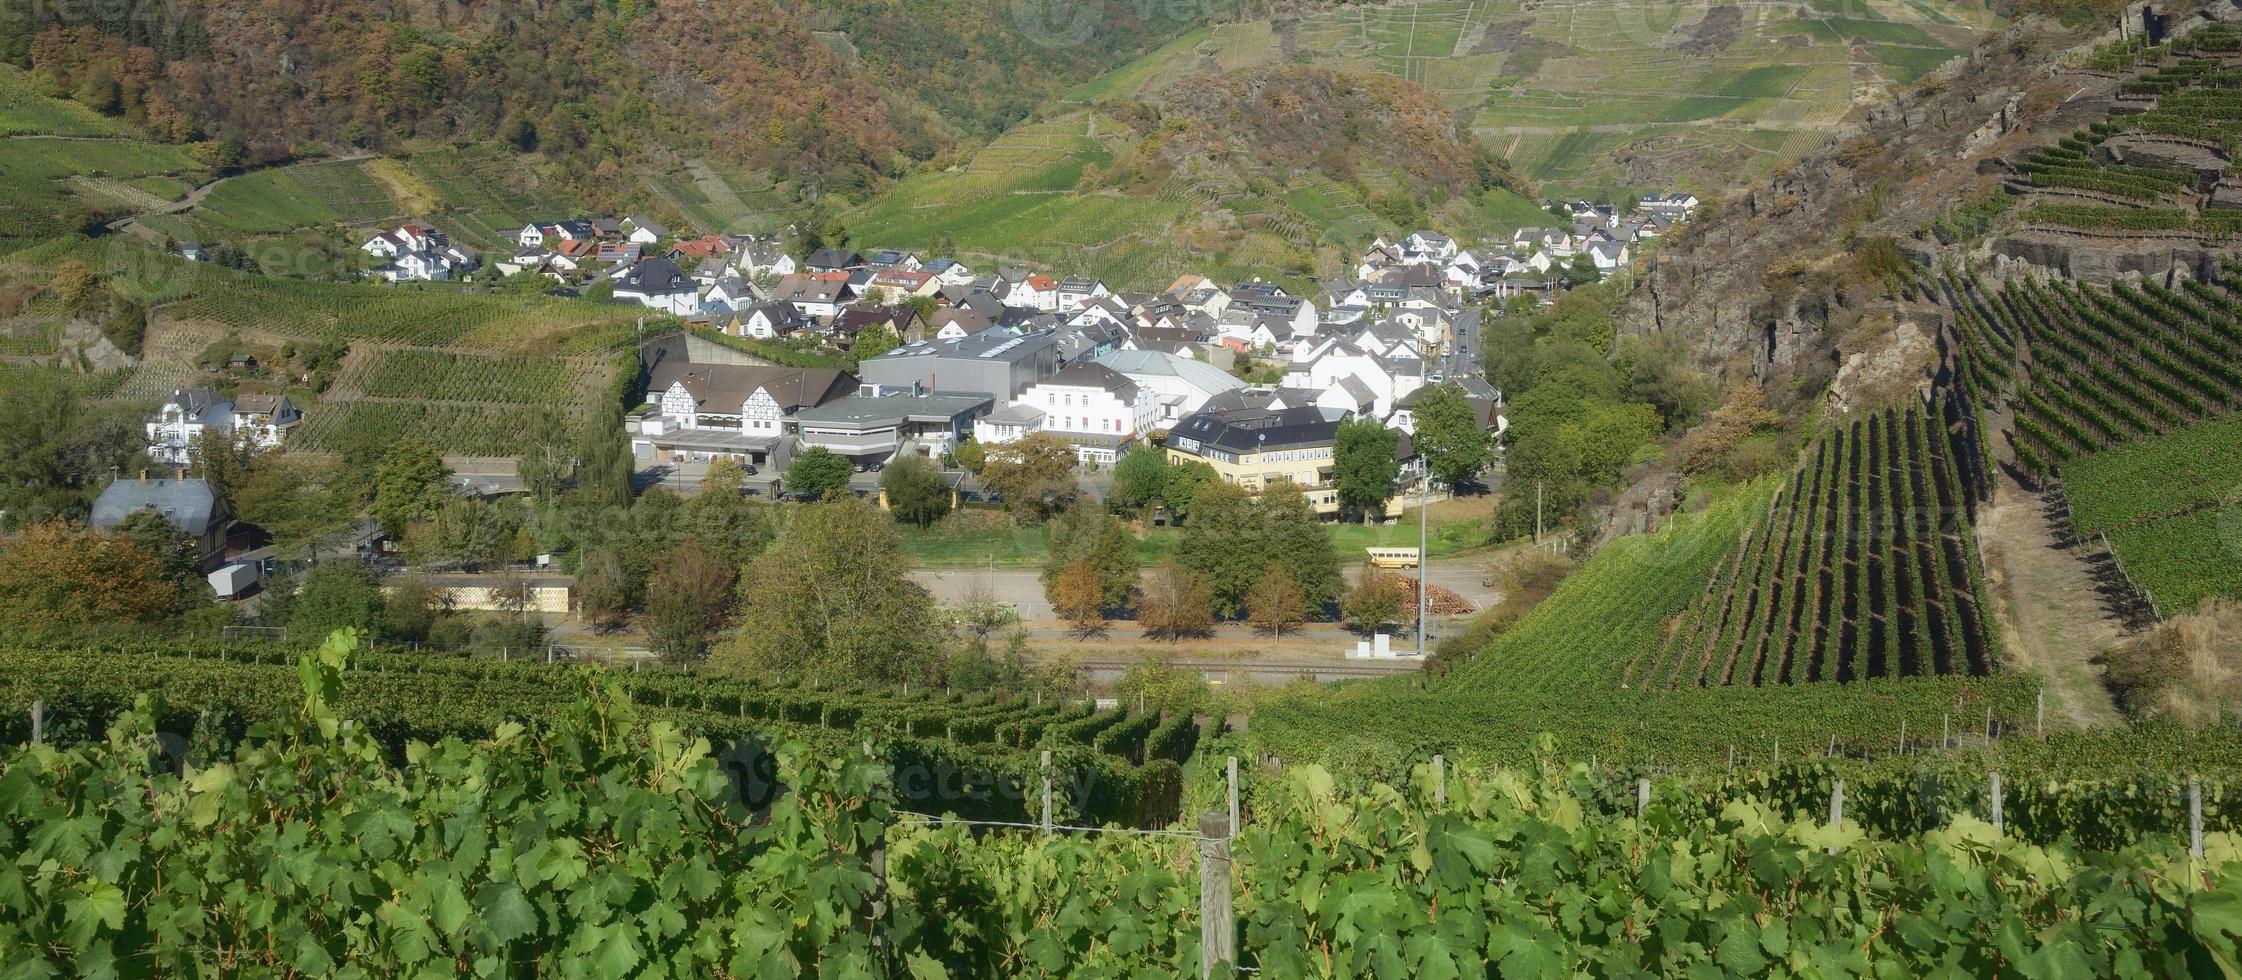 wijn dorp van meischoss voordat de overstroming 2021, ahrtal, rijnland-palts, duitsland foto